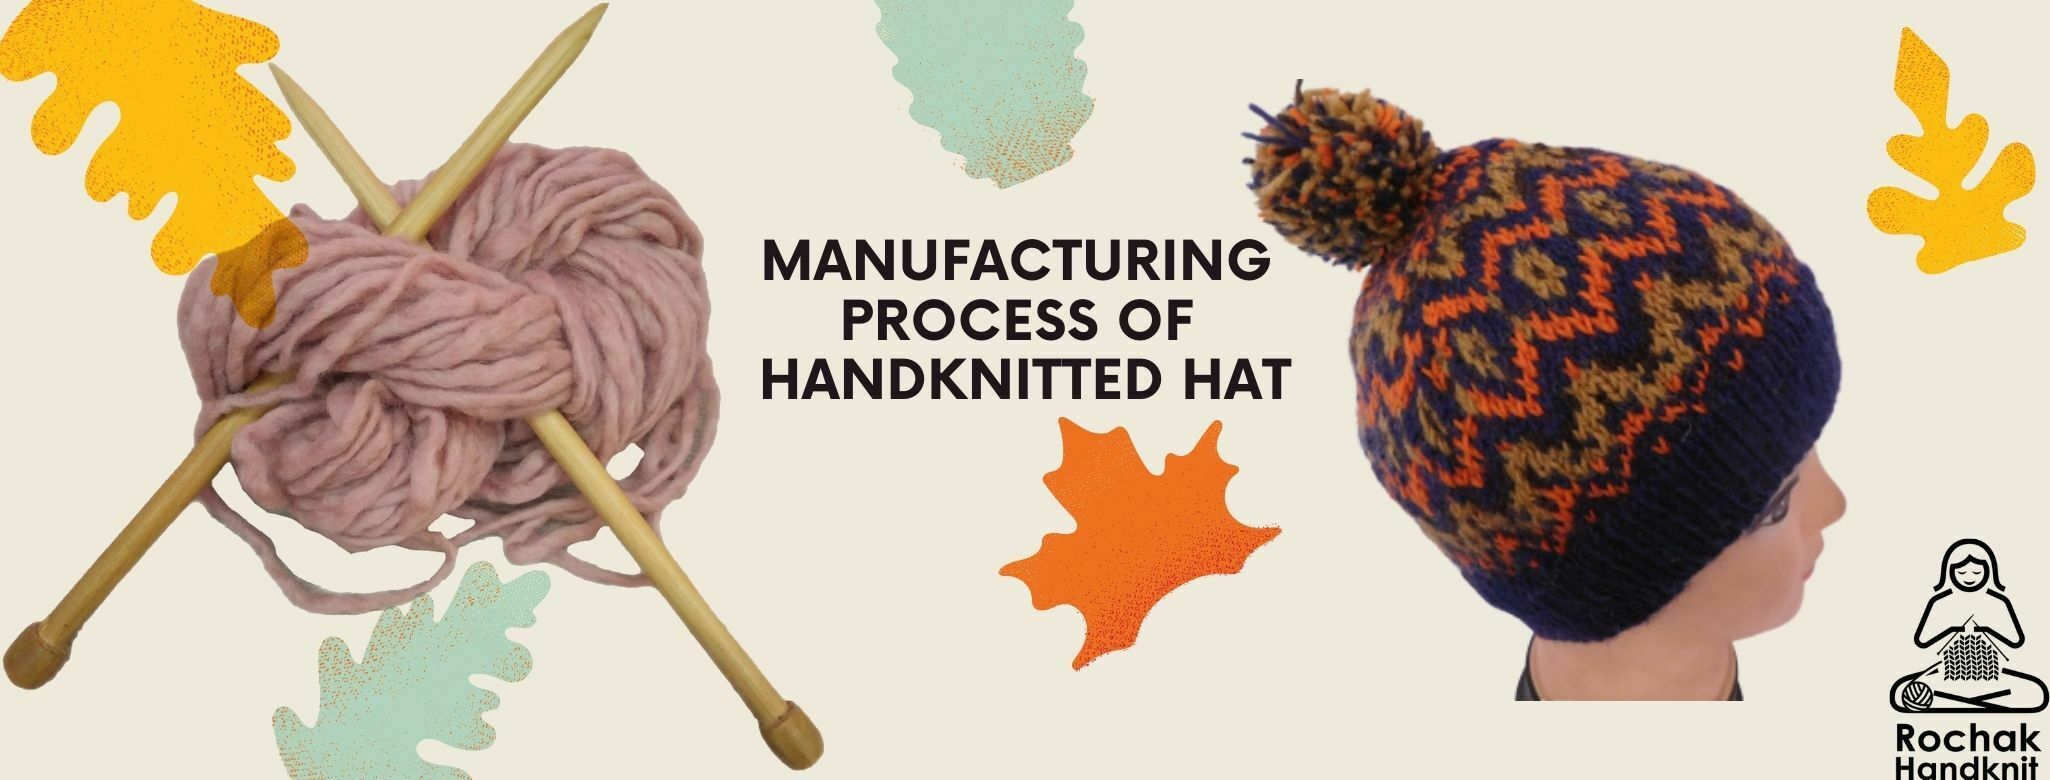 手編み帽子の製造工程 - Rochak Handknit